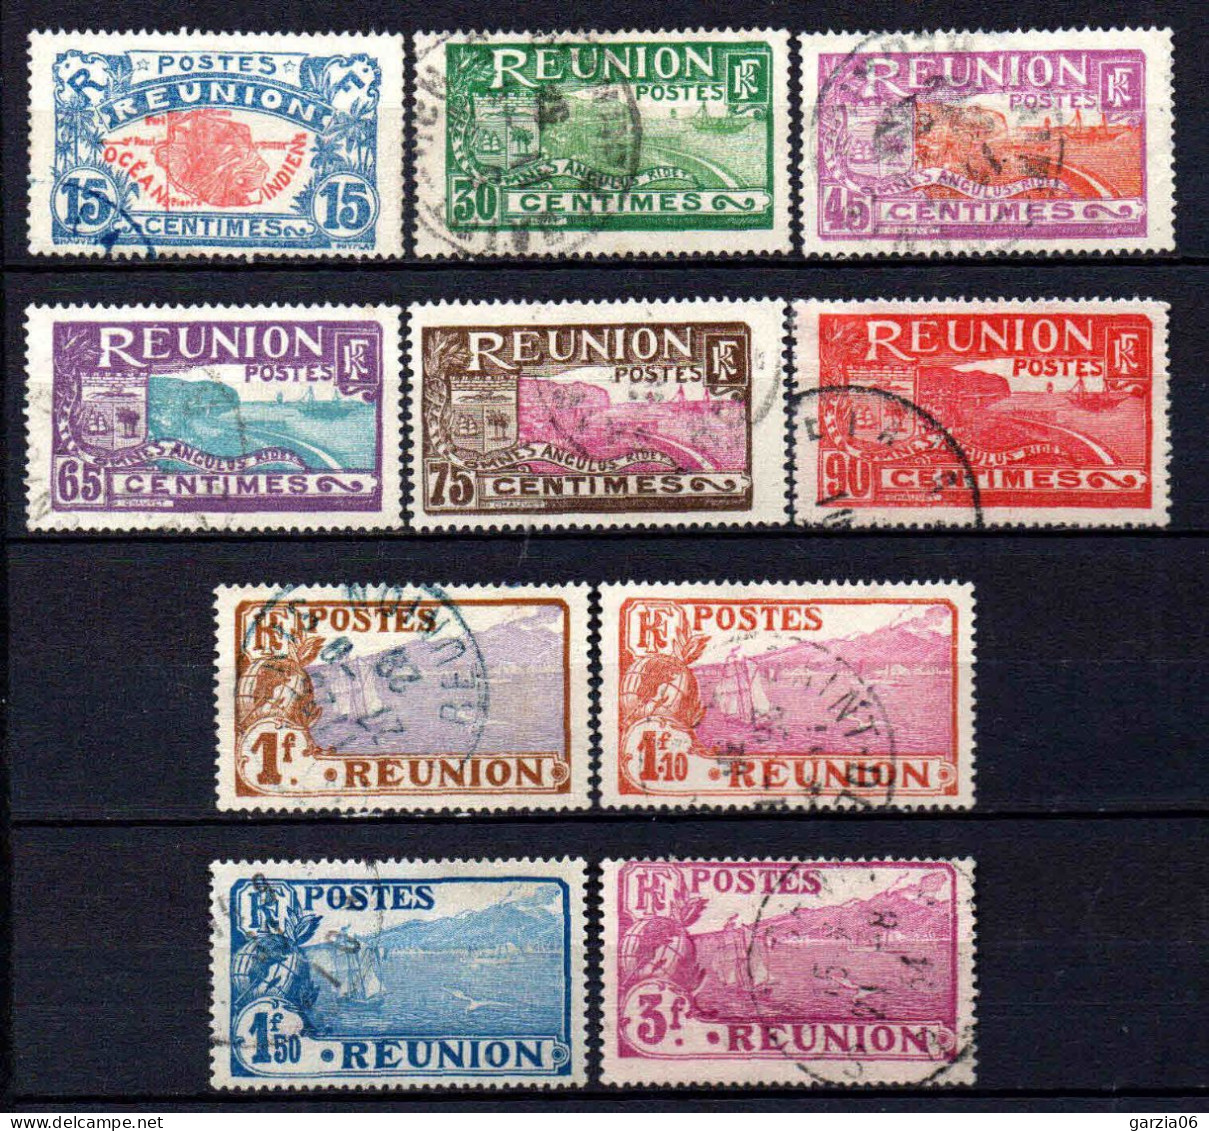 Réunion - 1928 -  Nouvelles Valeurs - N° 109 à 118  - Oblit - Used - Usati